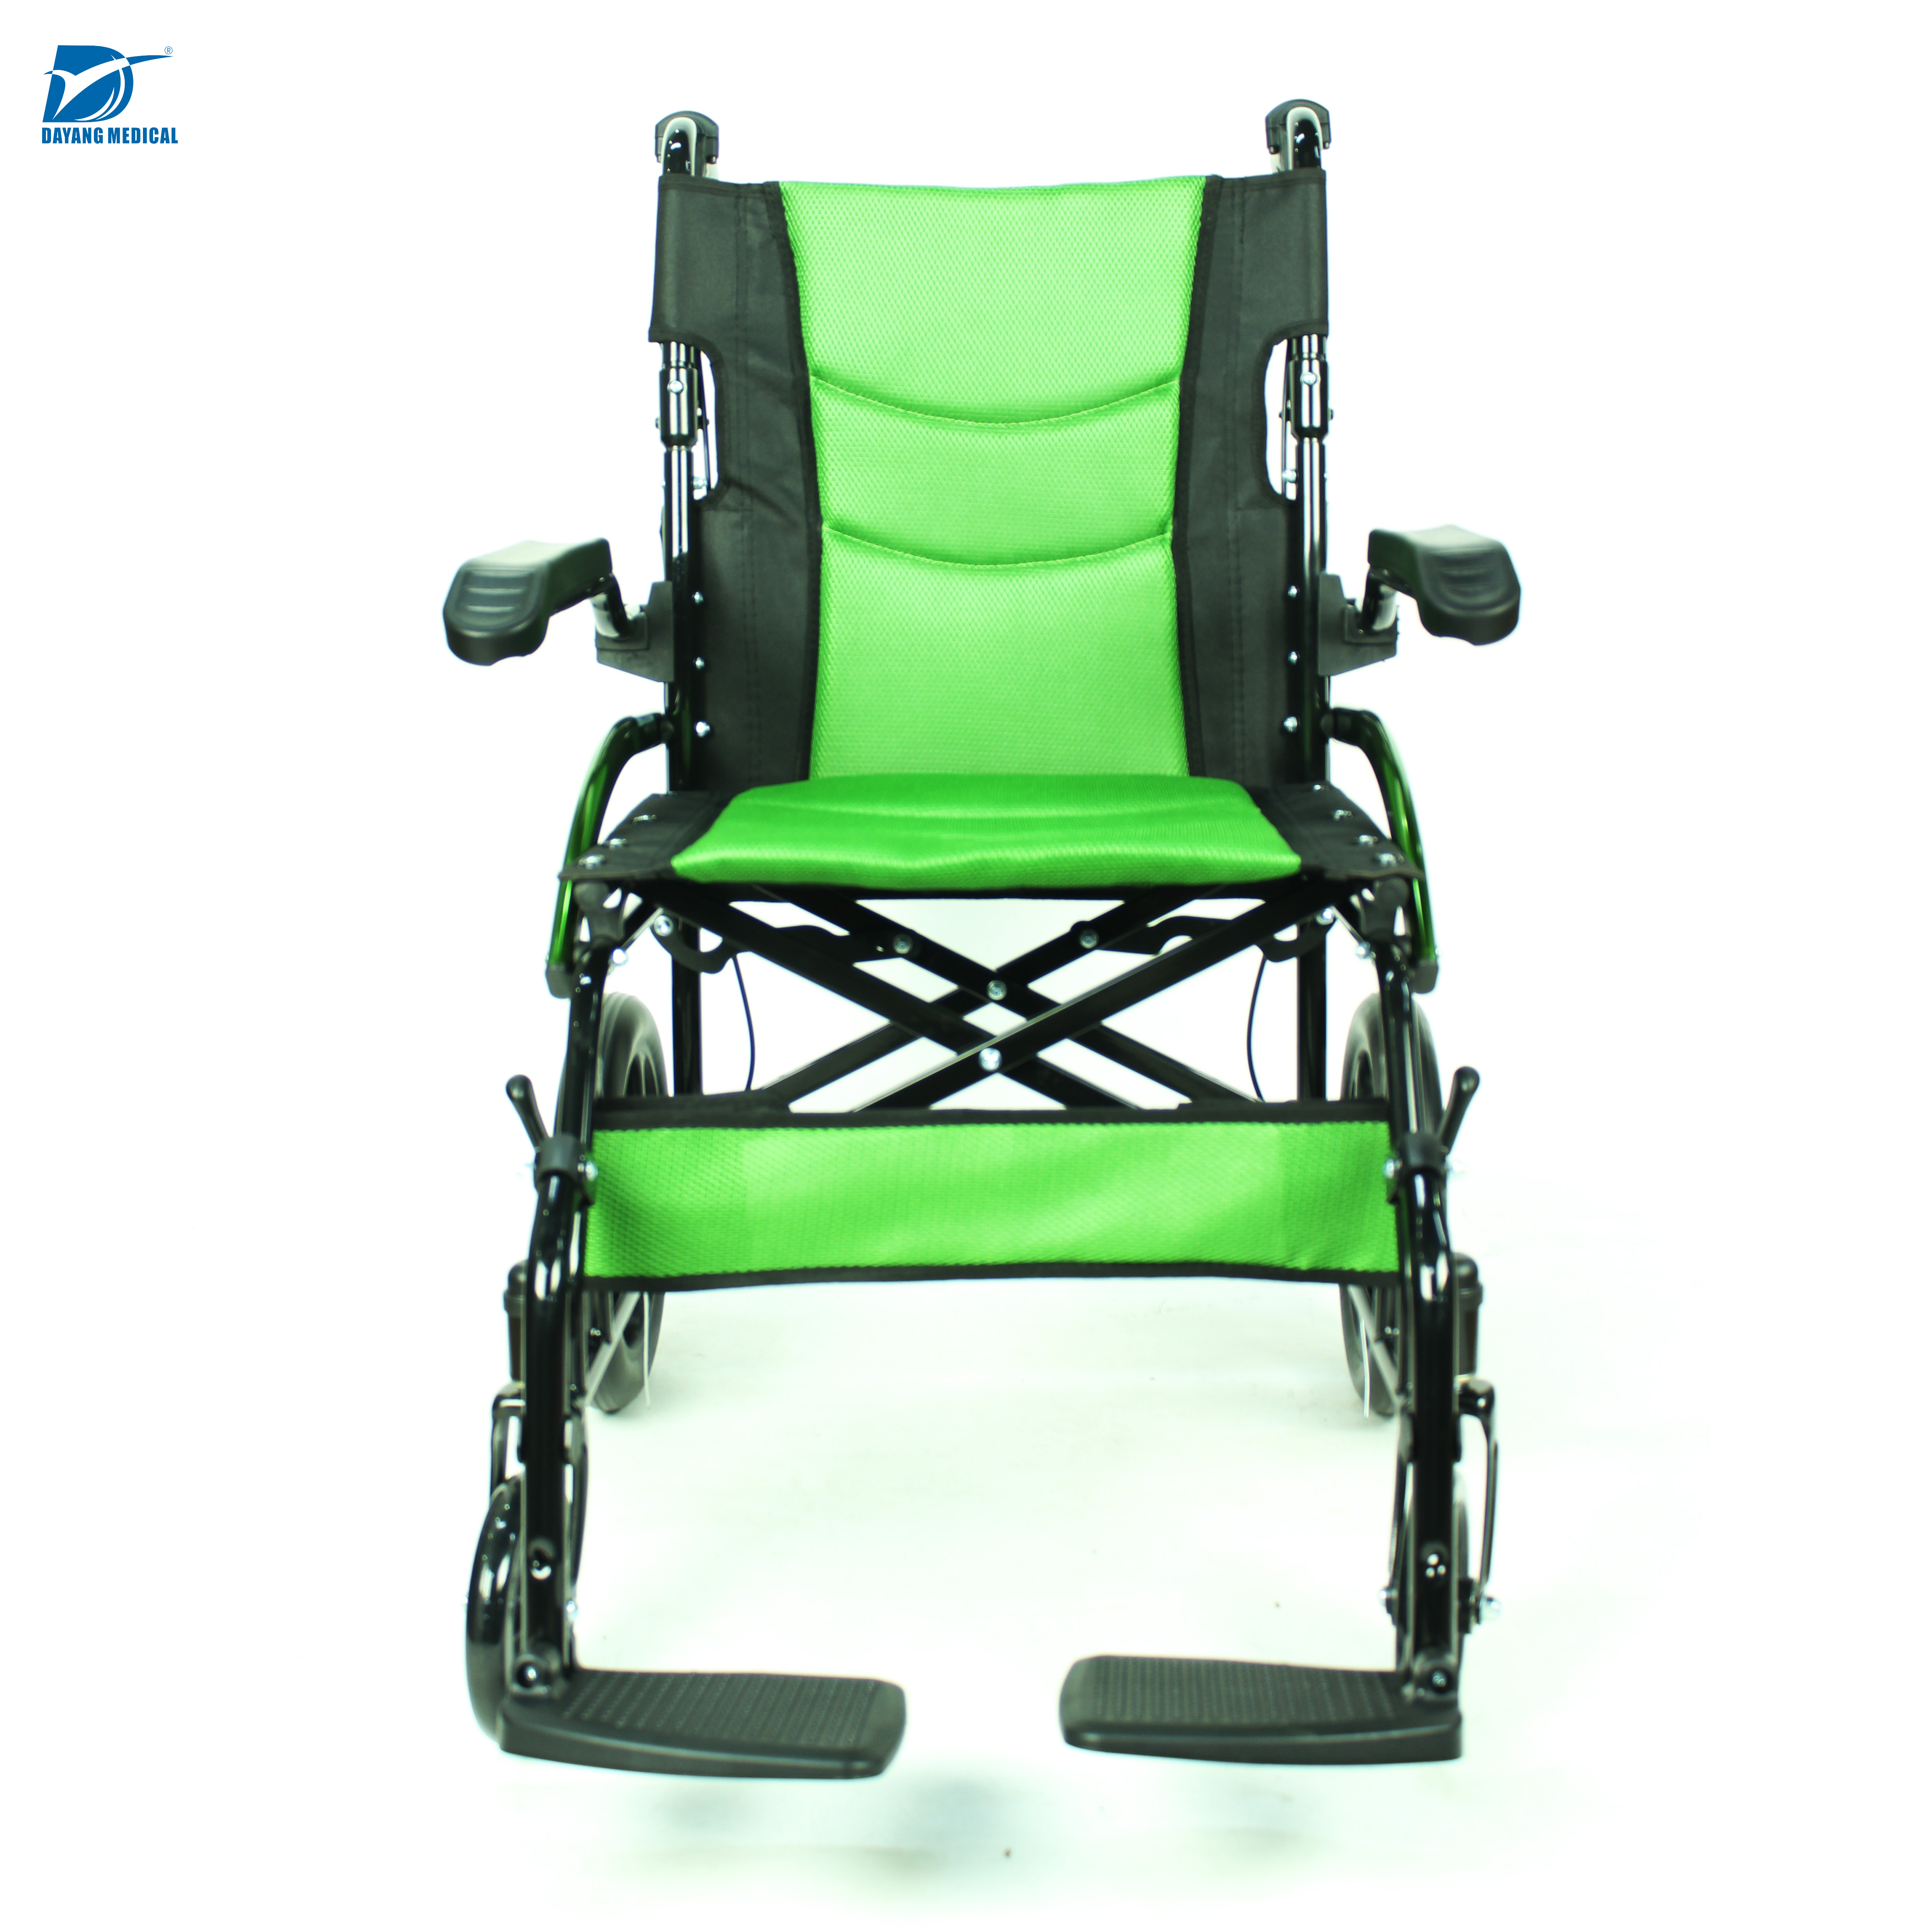 Китай Физиотерапевтическое оборудование хорошего качества алюминиевая экономичная складная ручная инвалидная коляска, производитель